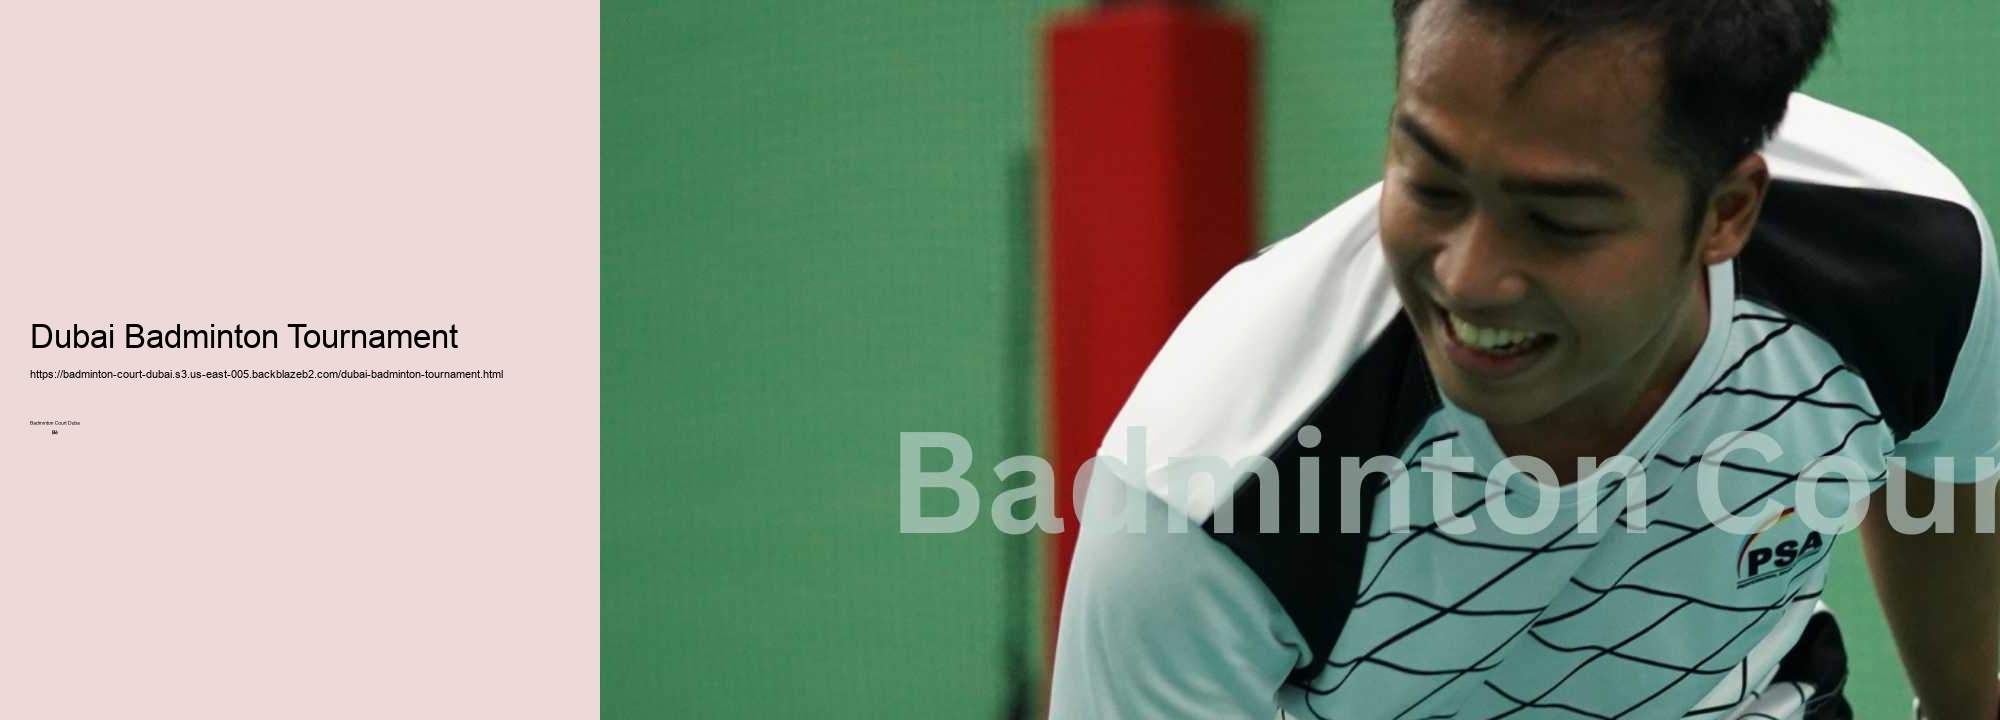 Dubai Badminton Tournament